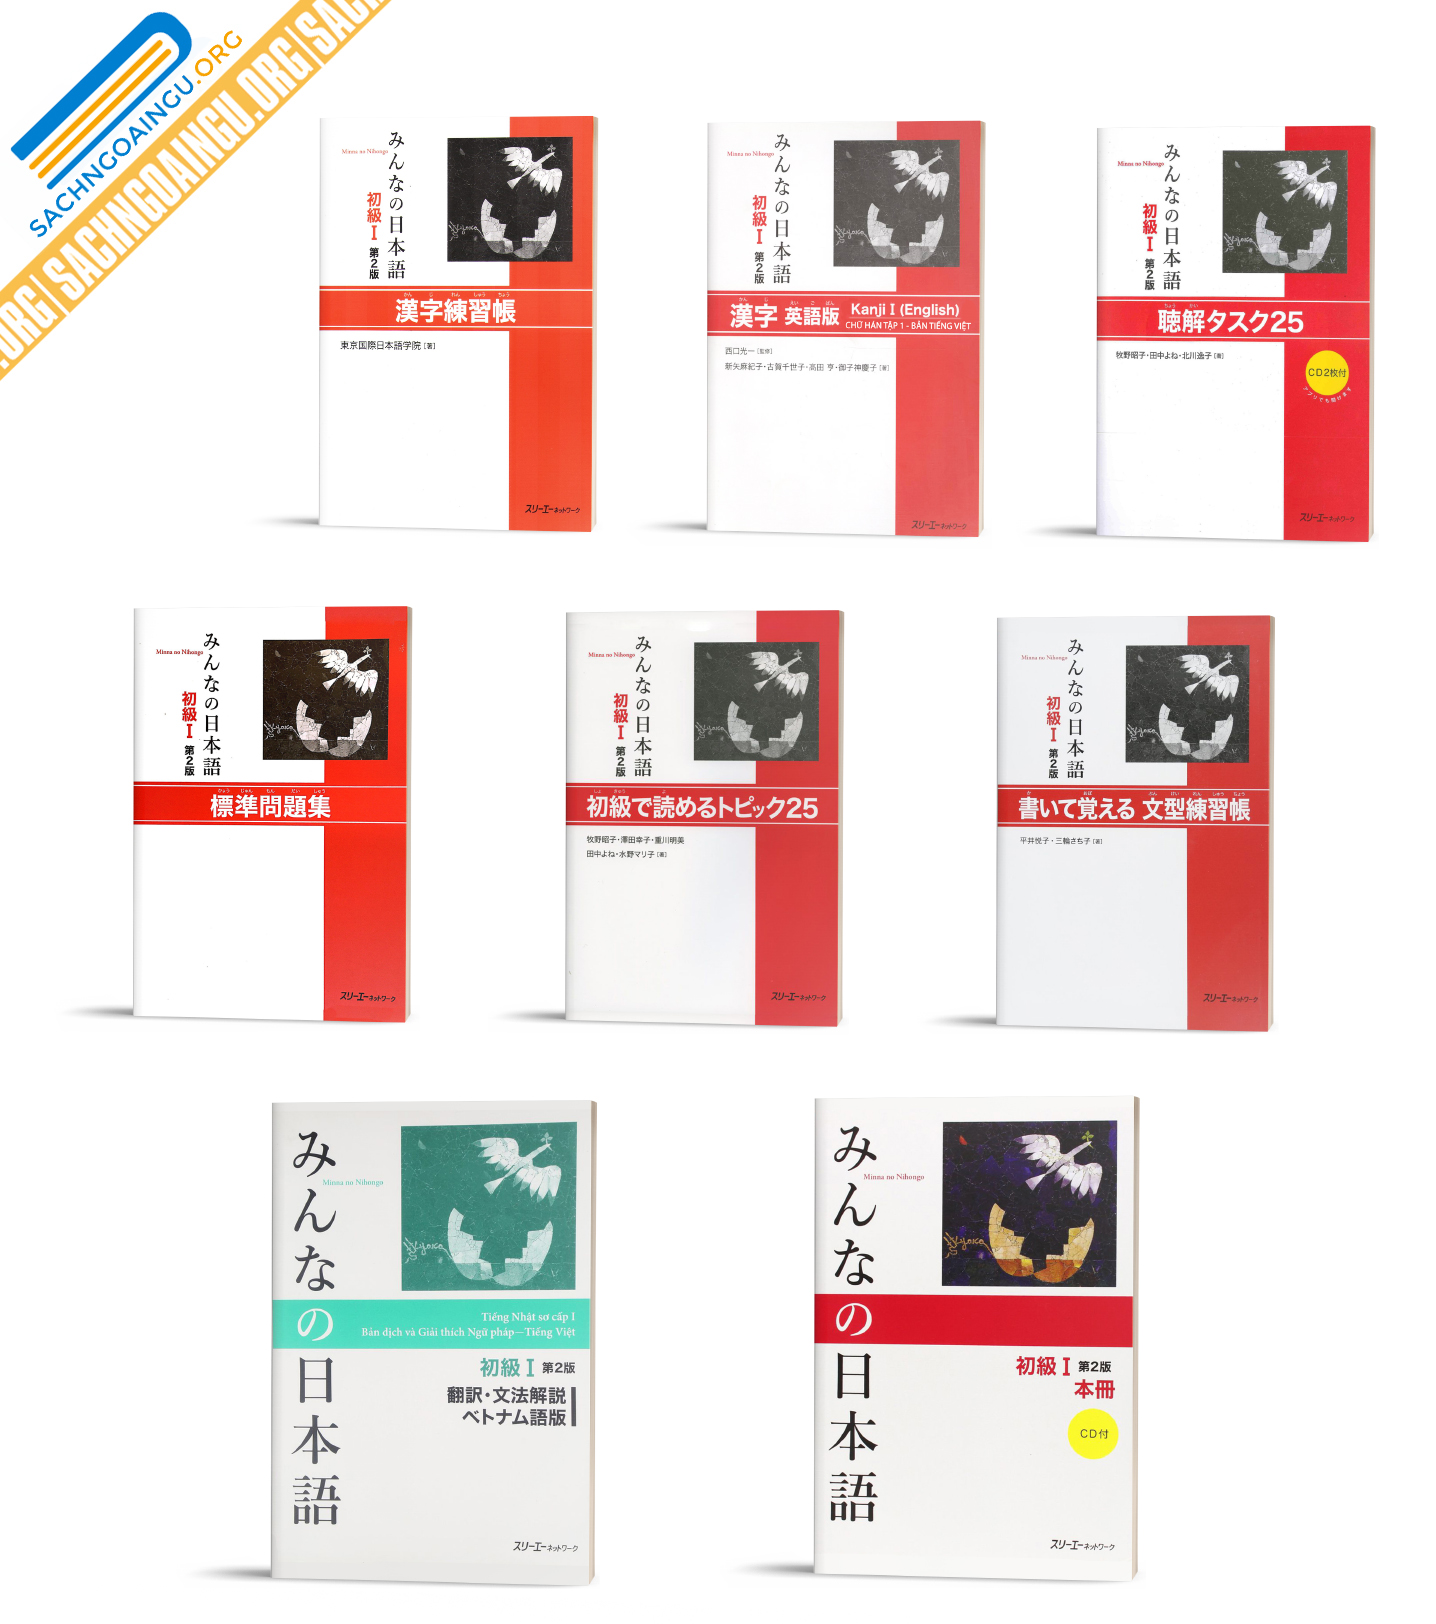 Trọn Bộ Minna No Nihongo Tập 1 Bộ 8 Quyển Kem Cd Tai Bản Khuyến Mai Dvd Kaiwa Trị Gia 250k Sach Tiếng Nhật